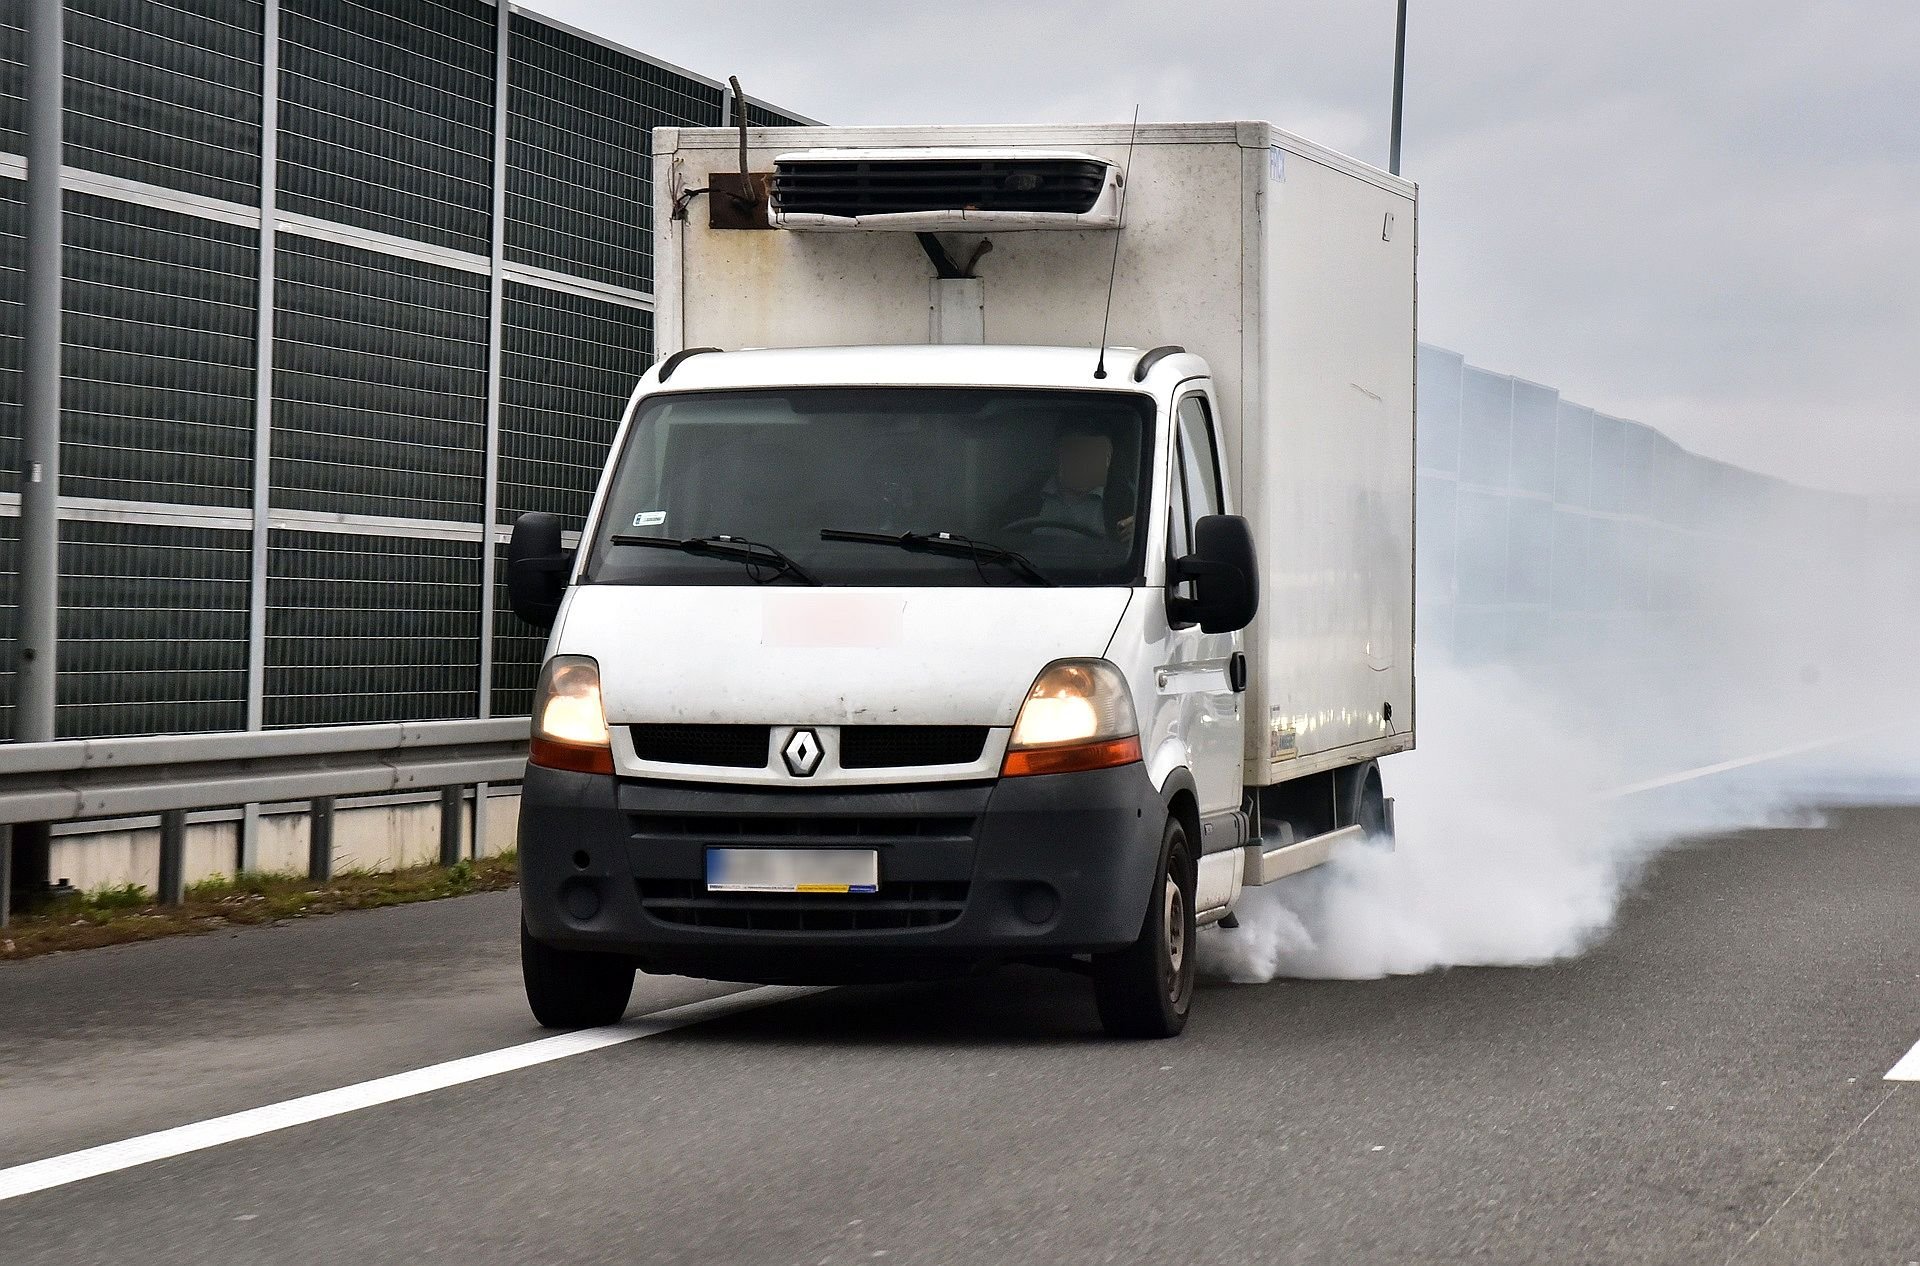 Samochód Kopci Na Biało: Jakie Są Przyczyny Białego Dymu Z Wydechu?